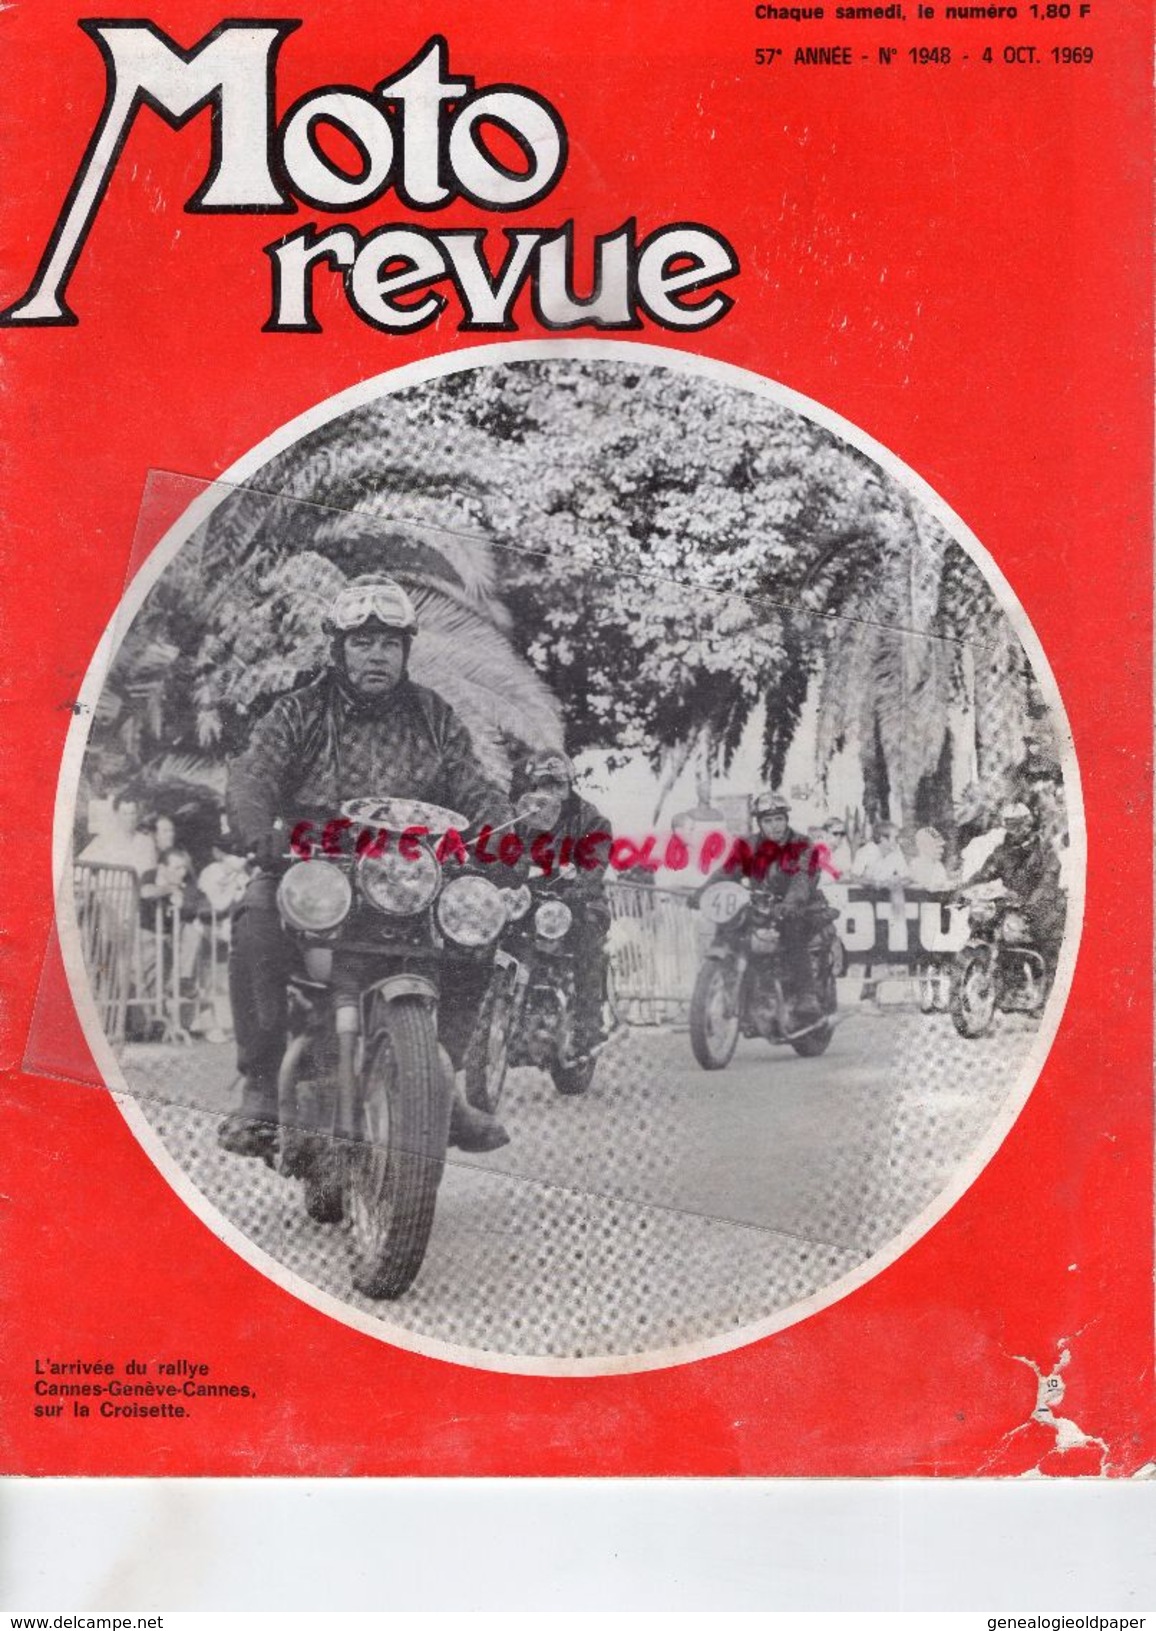 MOTO REVUE - N° 1948- 4-10-1969-RALLYE CANNES GENEVE-J.POCH NEUILLY-JAWA CZALETTA AERMACCHI-YOUGOSLAVIE-CROSS A CASSEL- - Motorfietsen